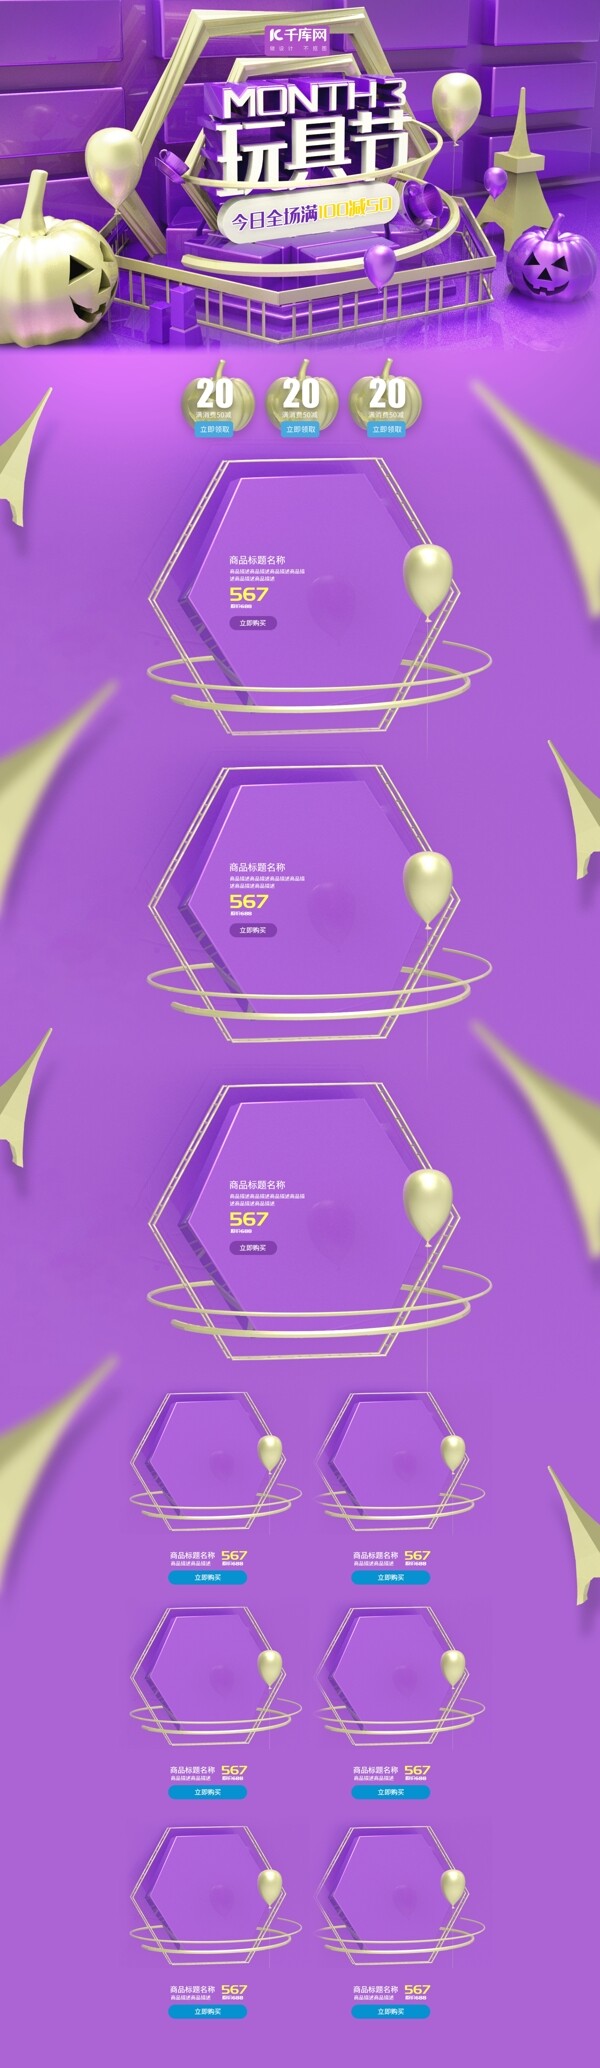 玩具节紫色系立体金属风小世食玩具节促销电商首页模板